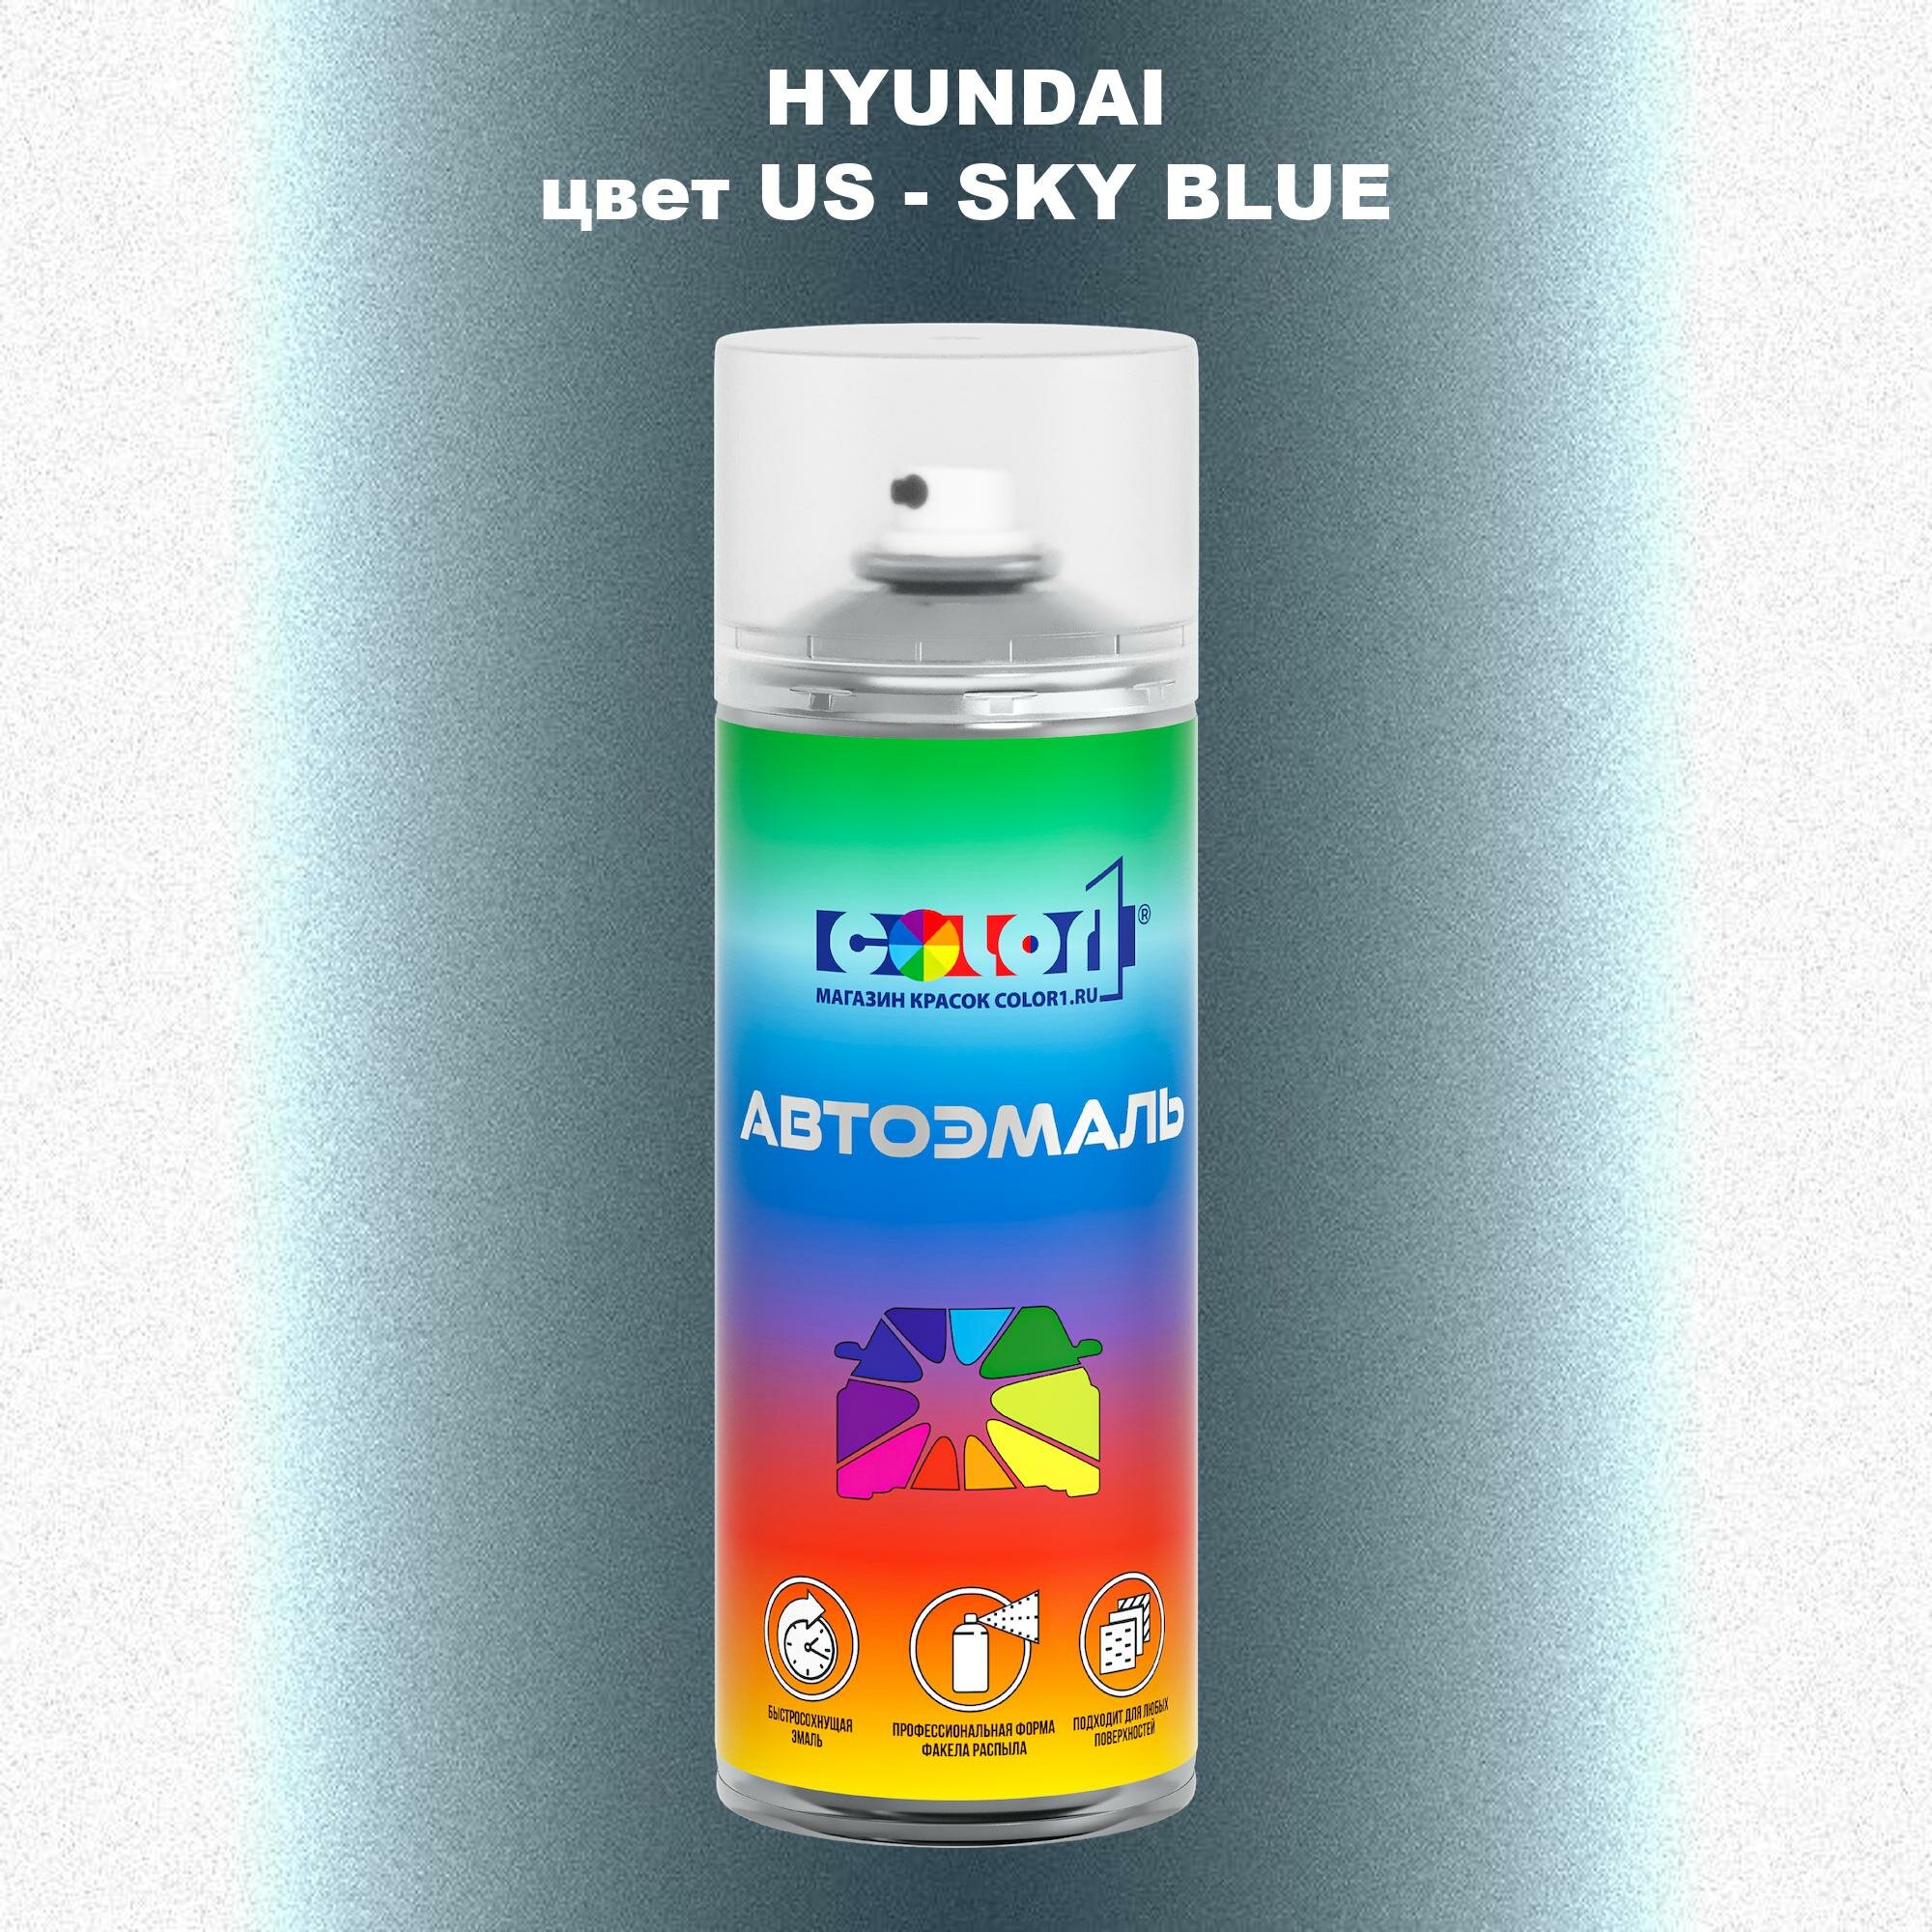 Аэрозольная краска COLOR1 для HYUNDAI, цвет US - SKY BLUE